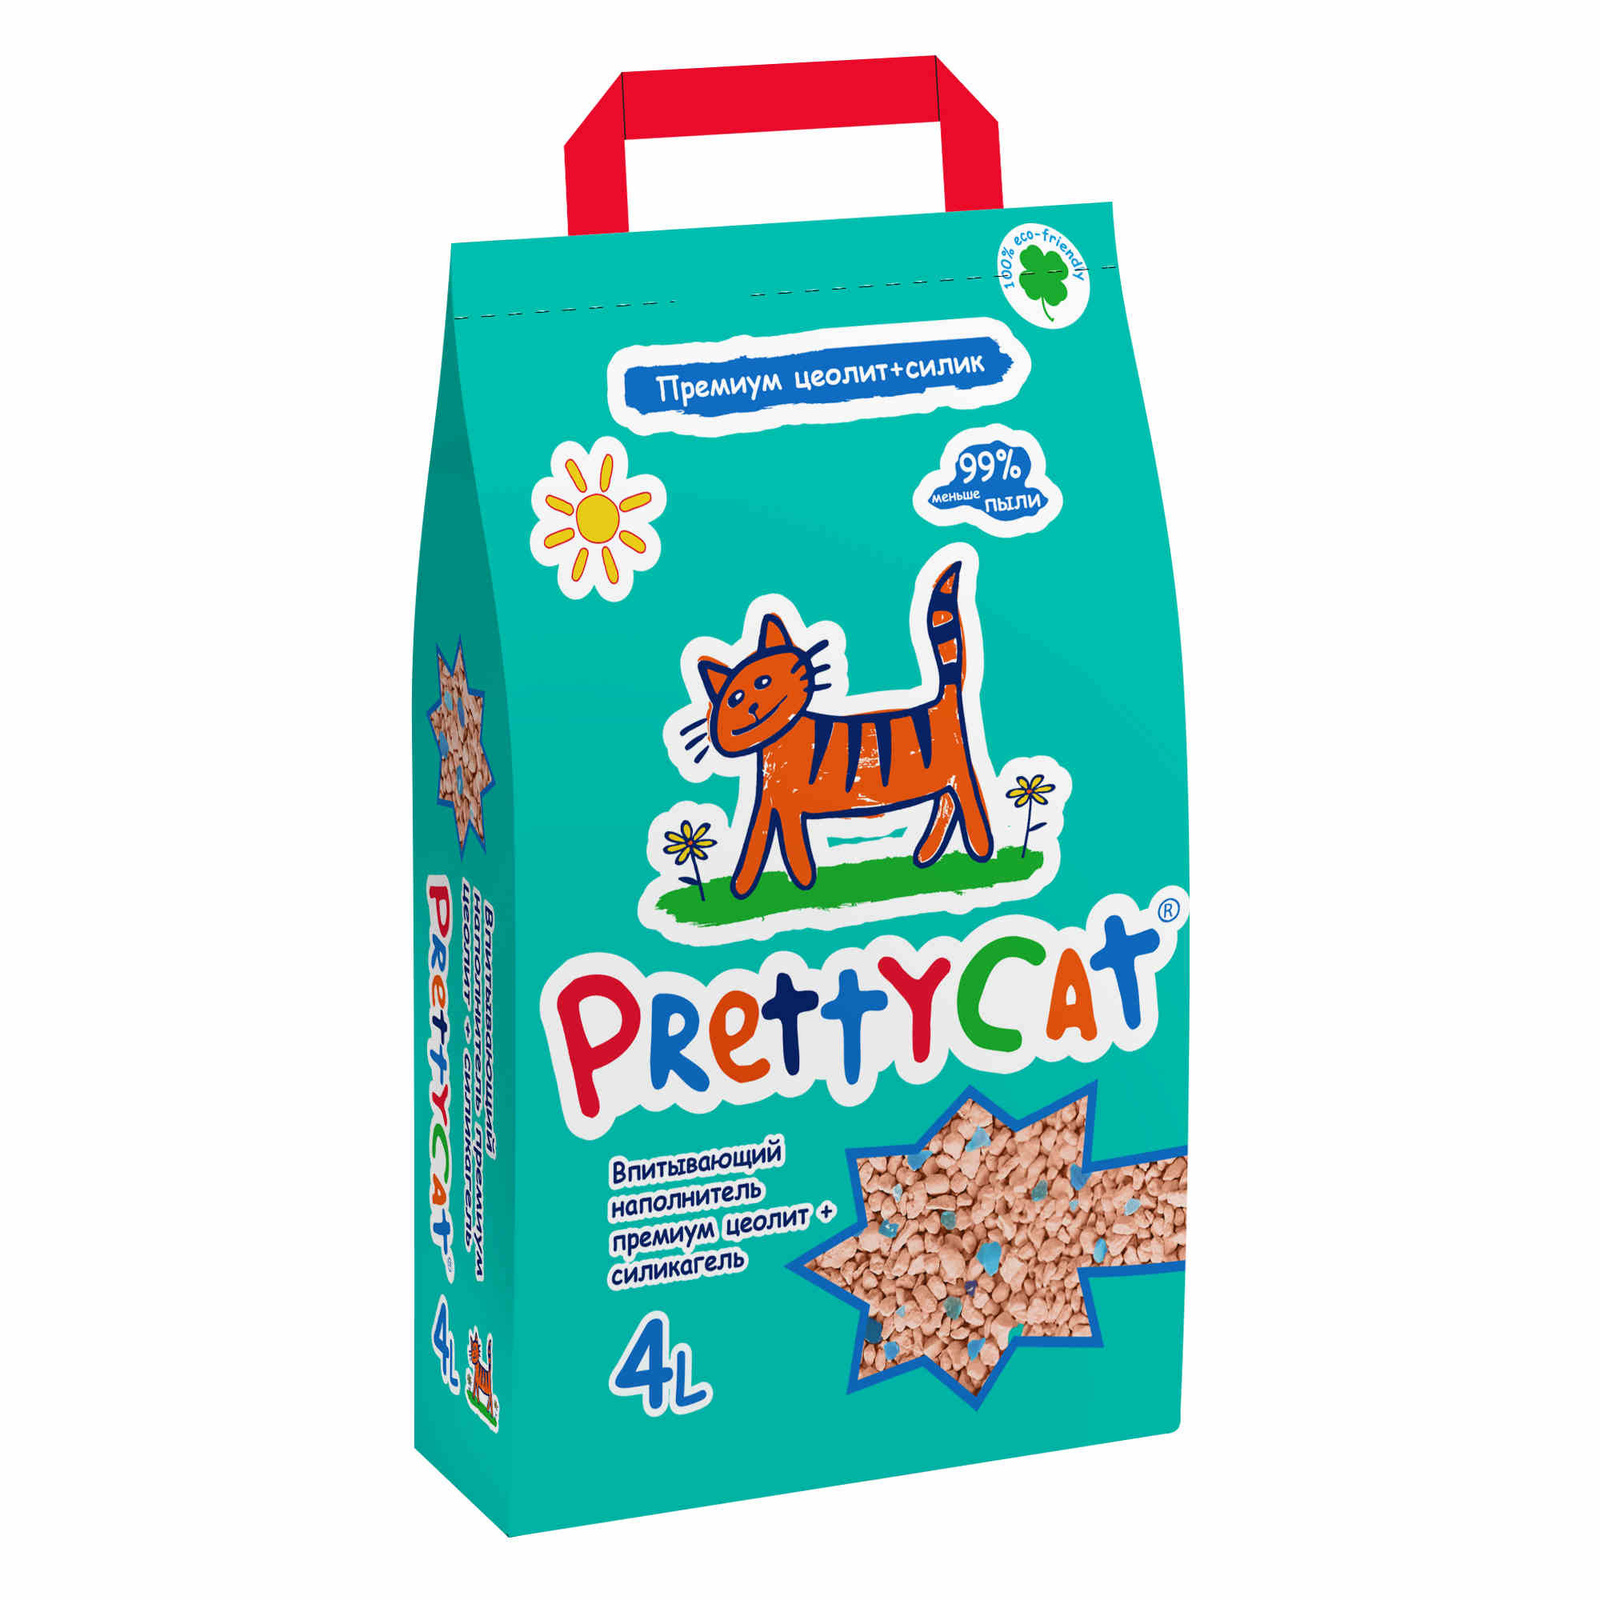 PrettyCat PrettyCat наполнитель впитывающий для кошачьих туалетов Premium (2 кг) prettycat prettycat впитывающий наполнитель с ароматом ванили 2 кг